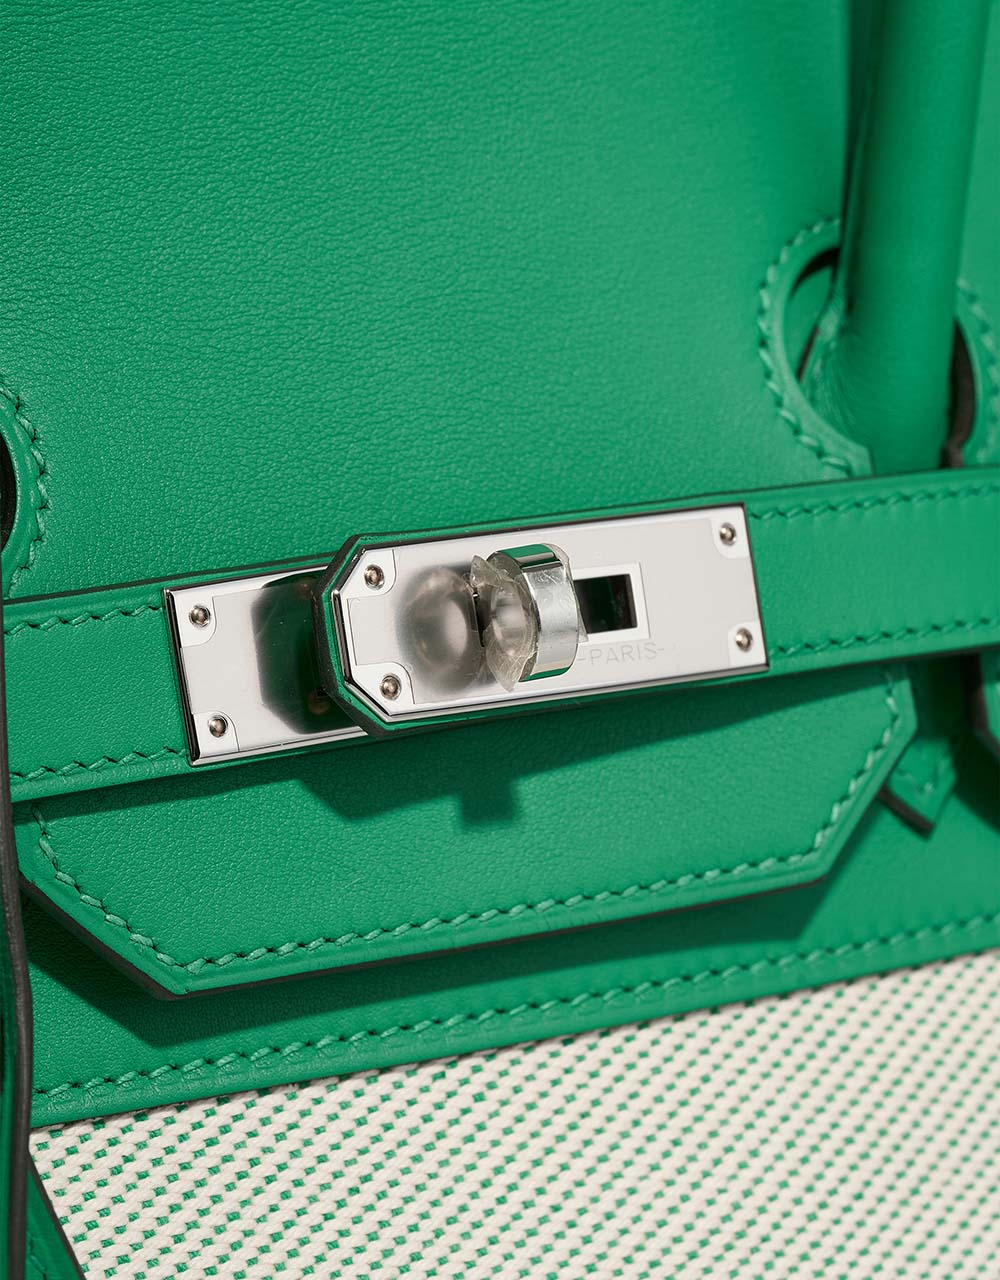 Hermès Birkin 35 Menthe Verschluss-System | Verkaufen Sie Ihre Designer-Tasche auf Saclab.com